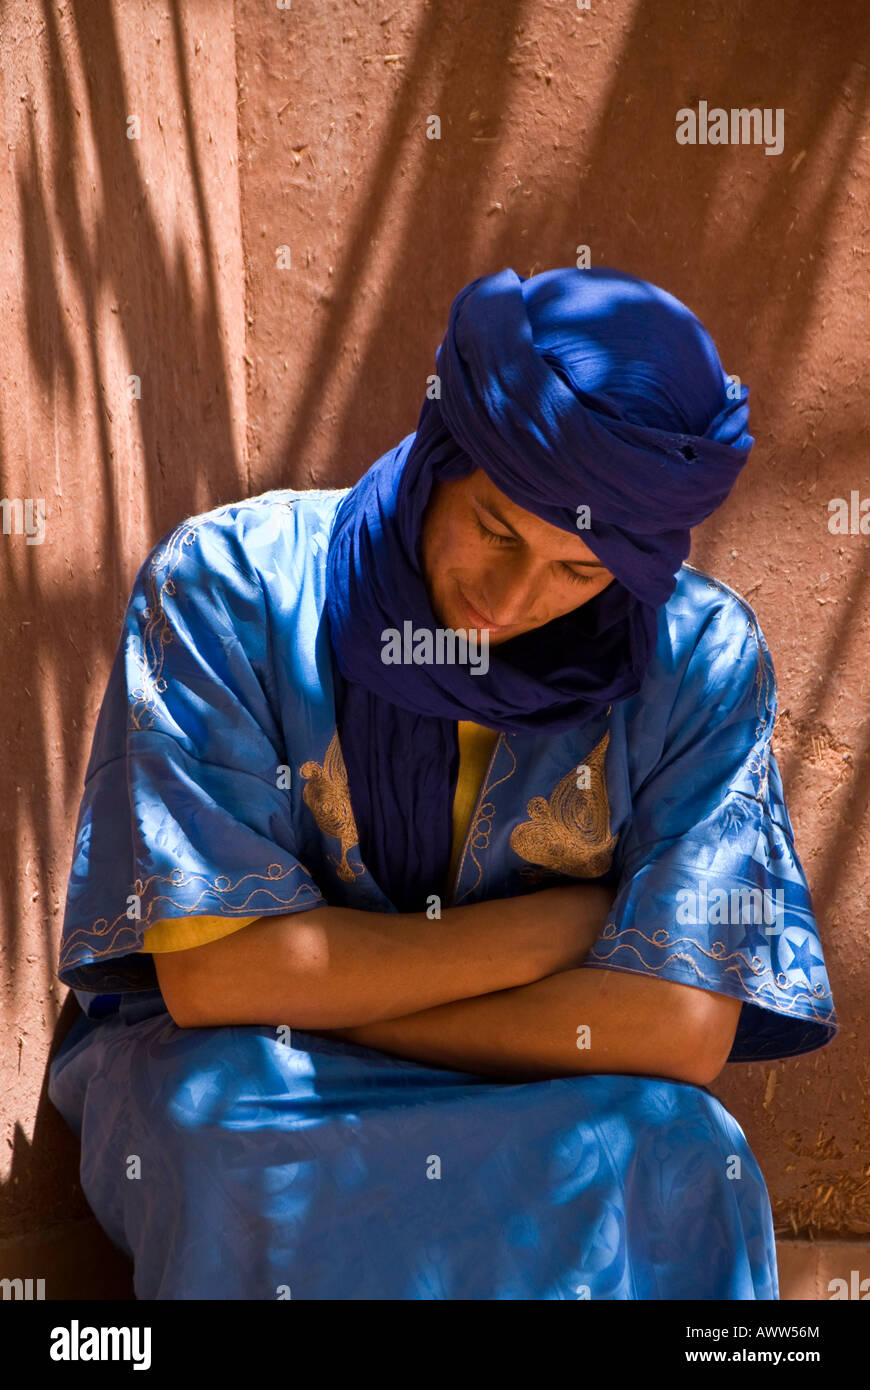 Lichtspiele auf Portrait ruhenden jungen in blau, Marokko Stockfoto